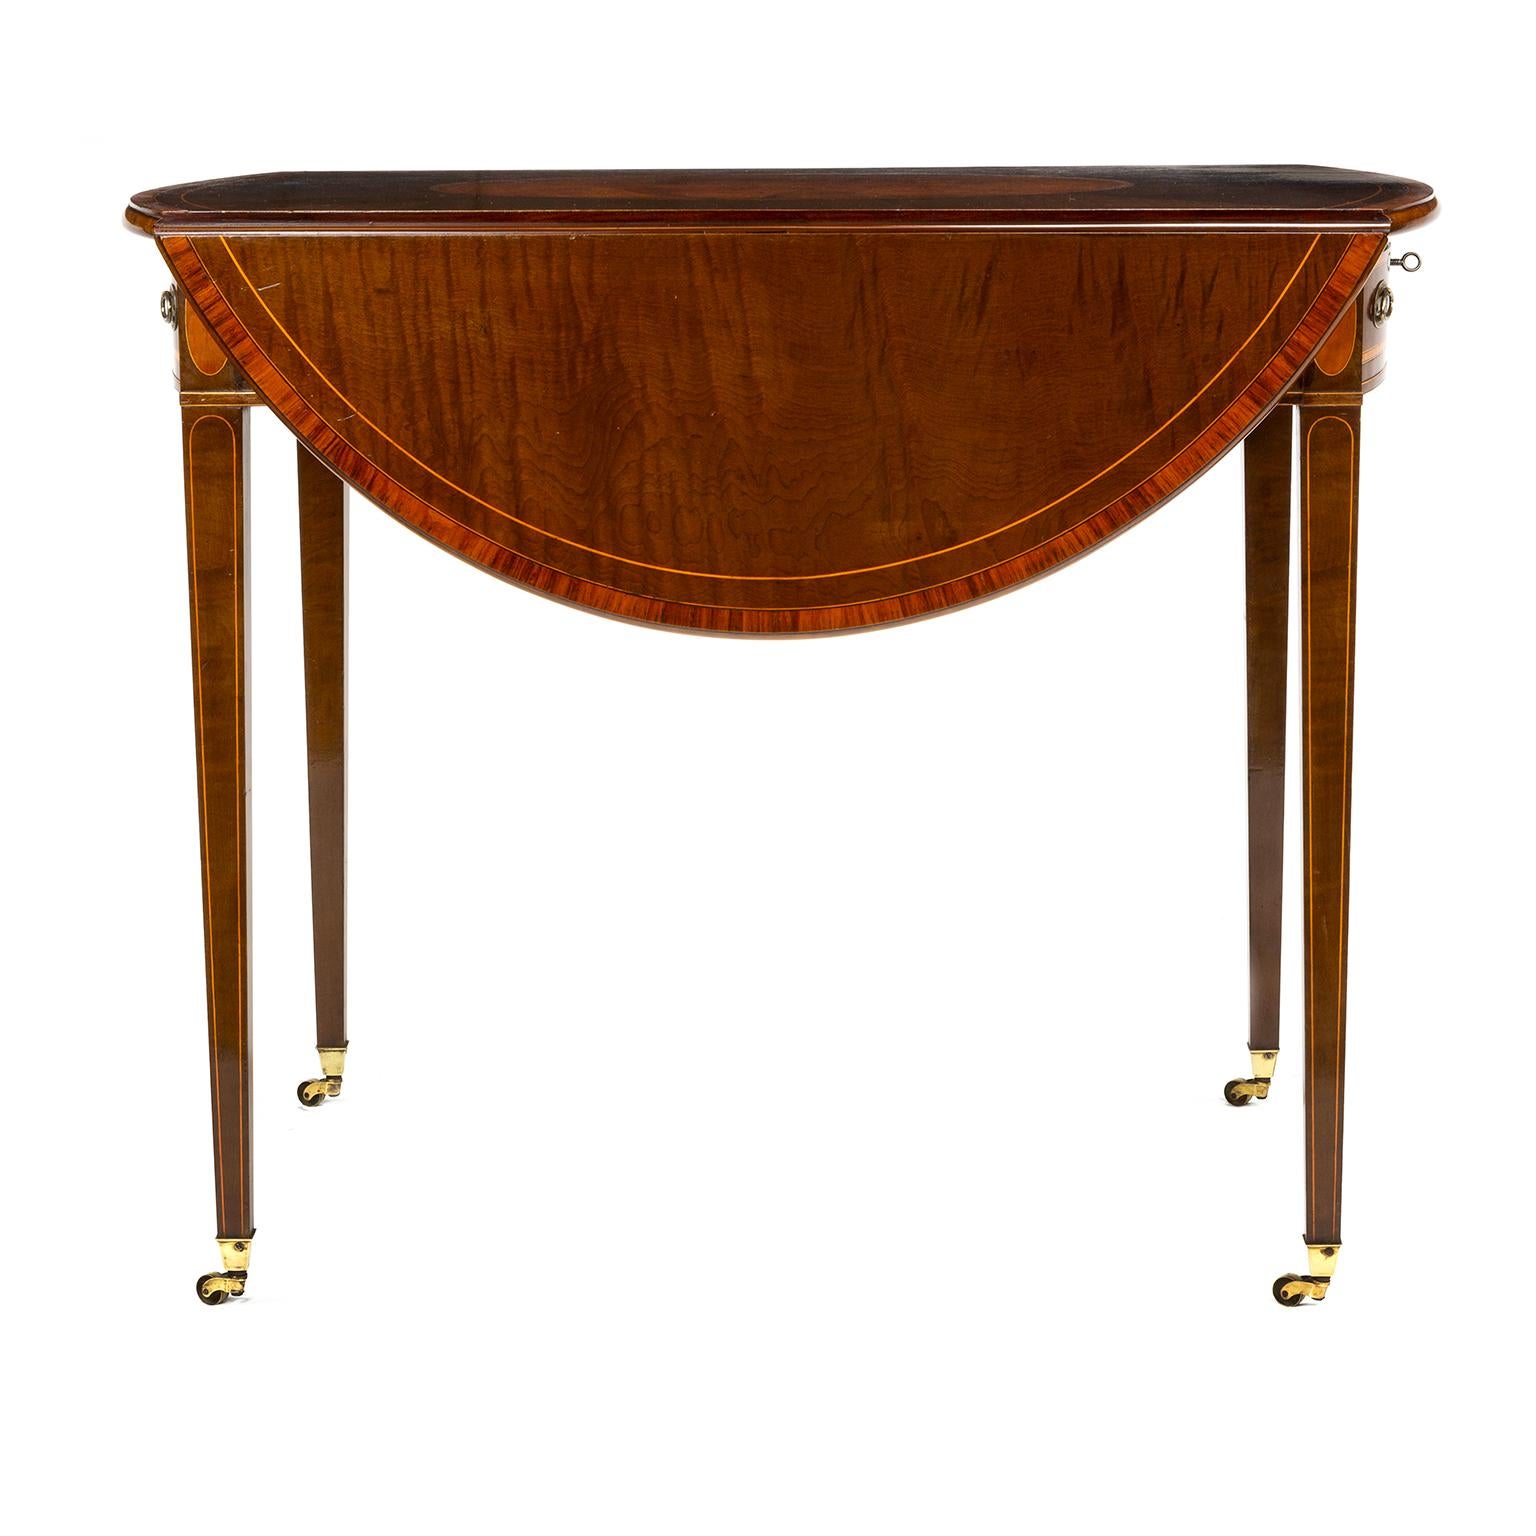 British 18th Century Hepplewhite Oval Sycamore Pembroke Table, circa 1780